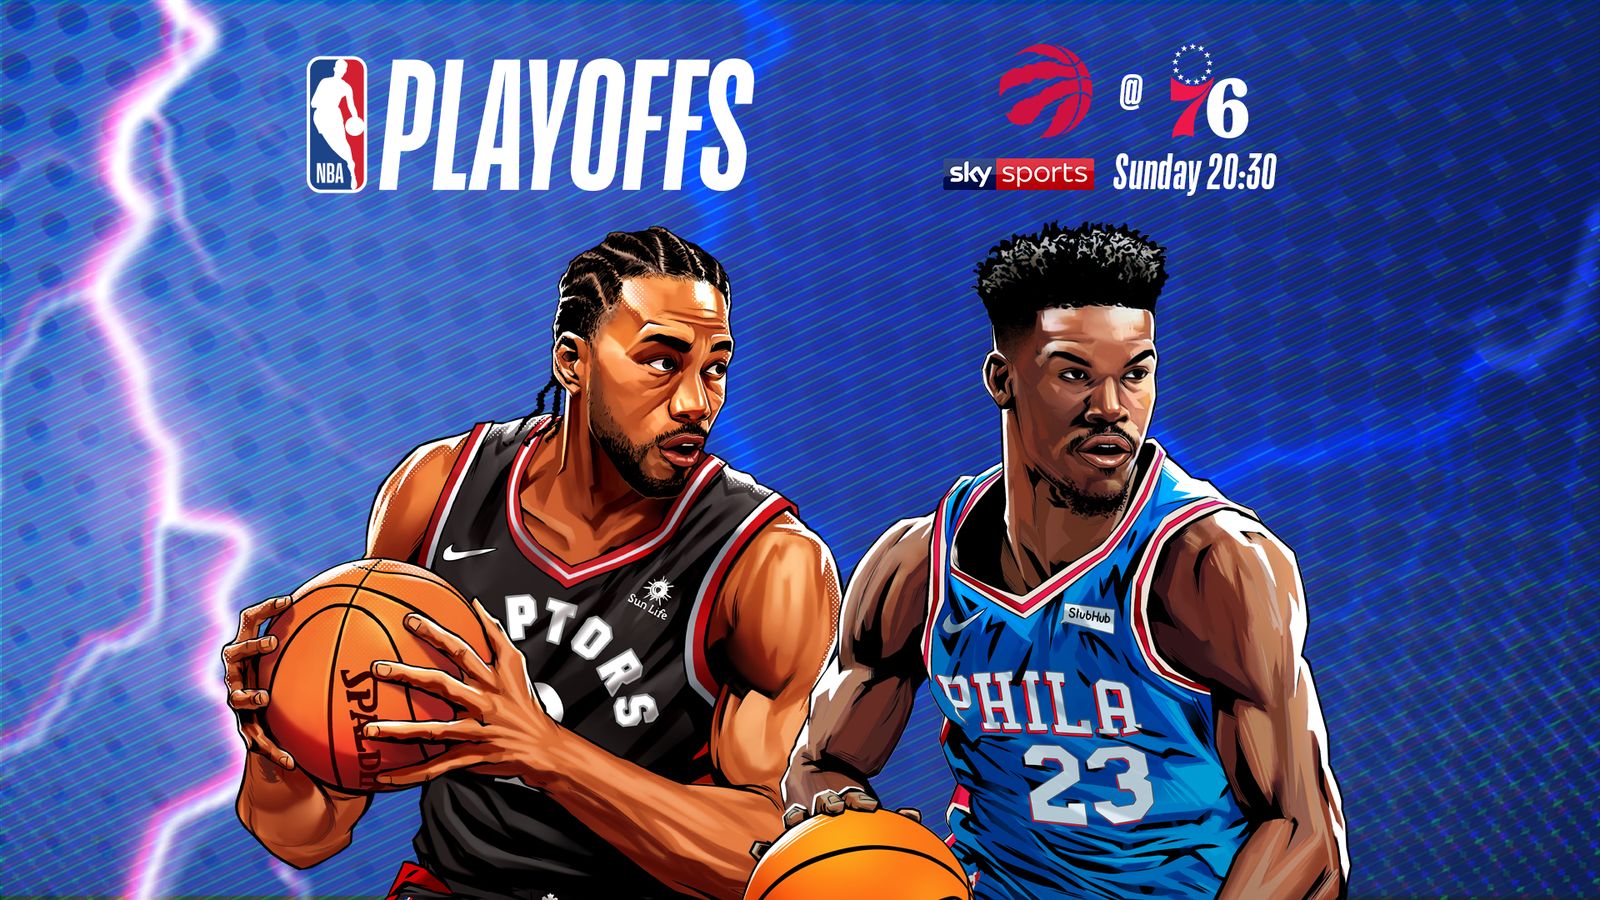 LIVE STREAM: Watch Toronto Raptors @ Philadelphia 76ers Game 4 live on skysports.com ...